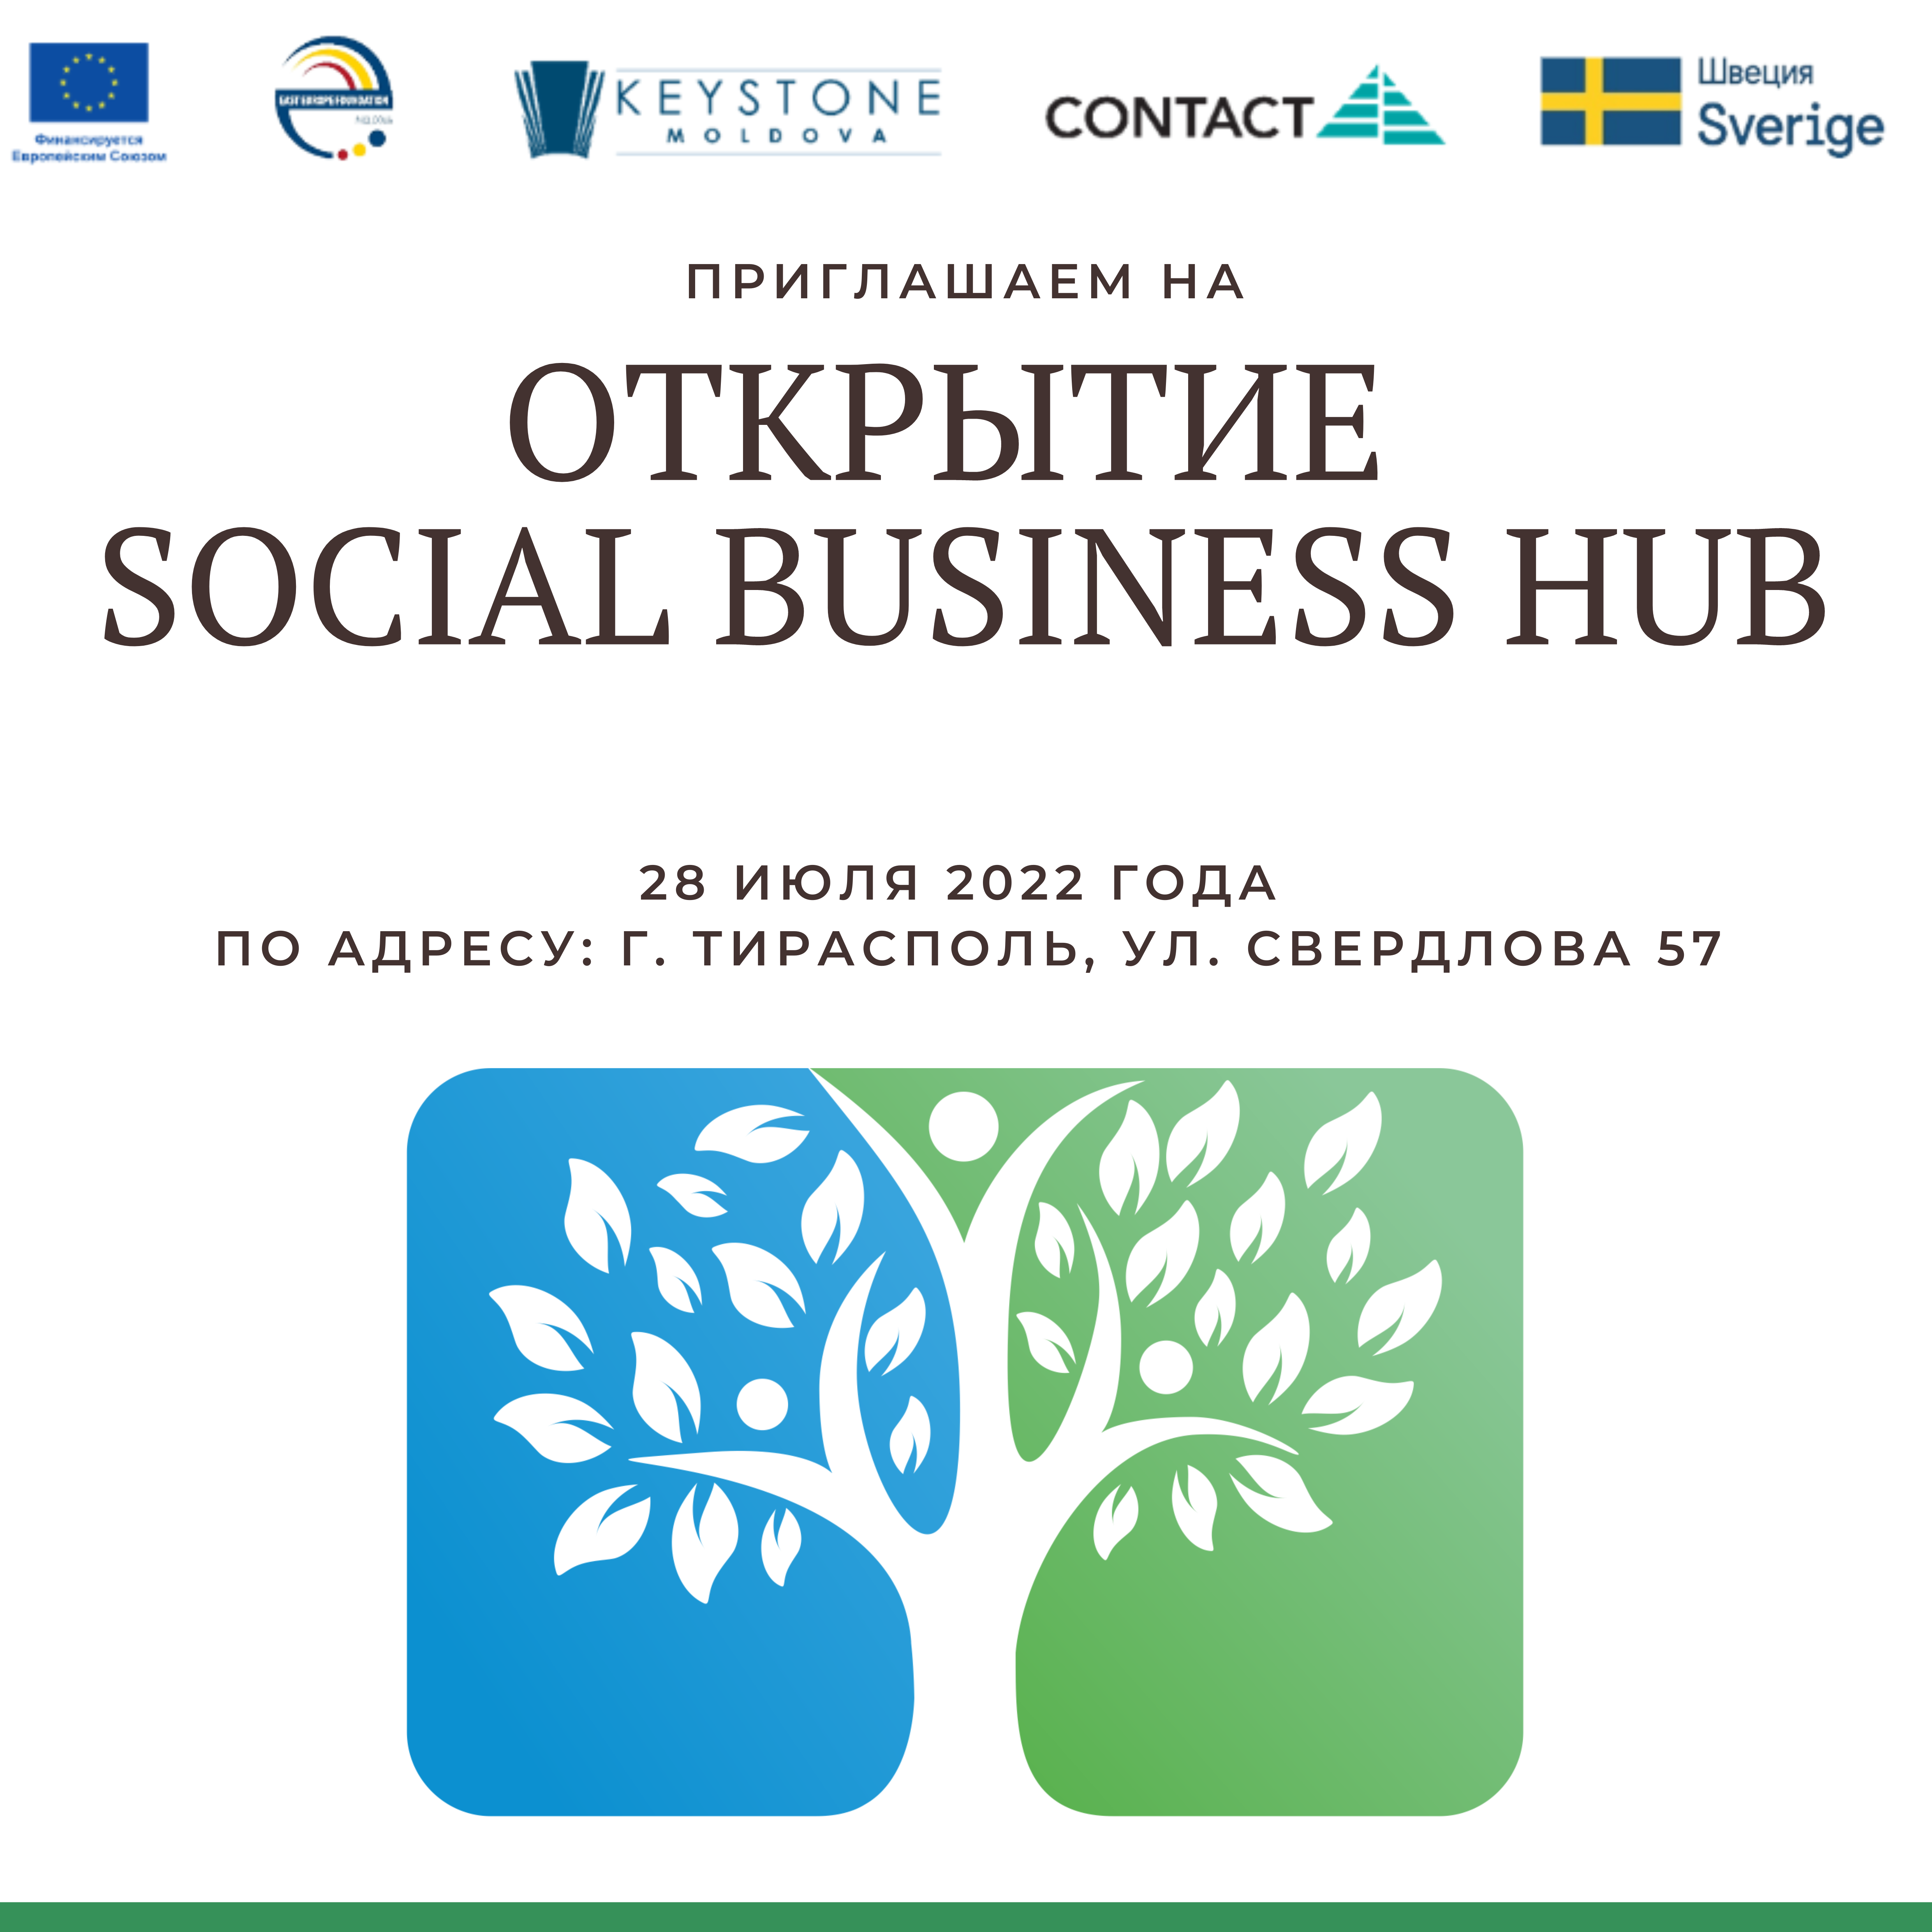 Приглашение на открытие Social Business Hub 28 июля